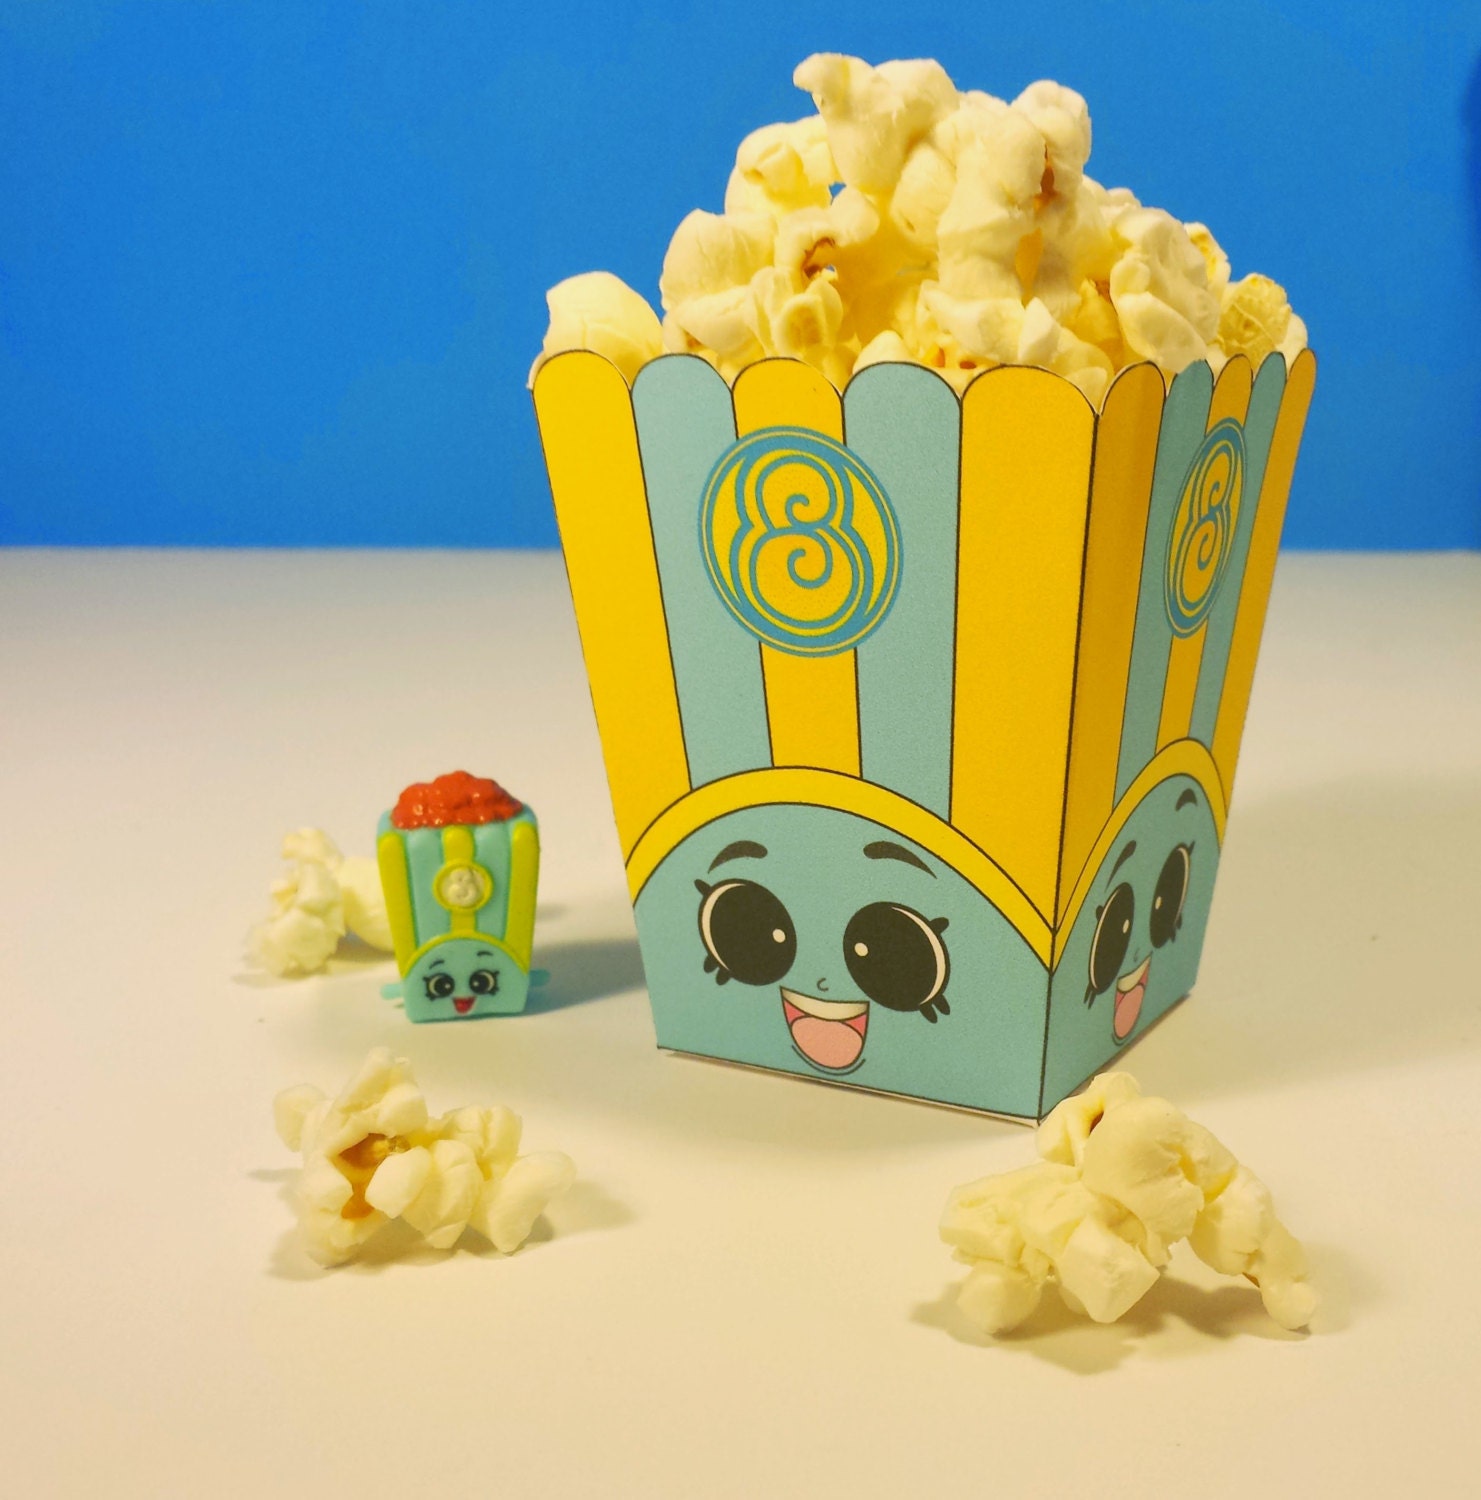 3 Poppy Corn Blue Popcorn Box Shopkins Birthday Party